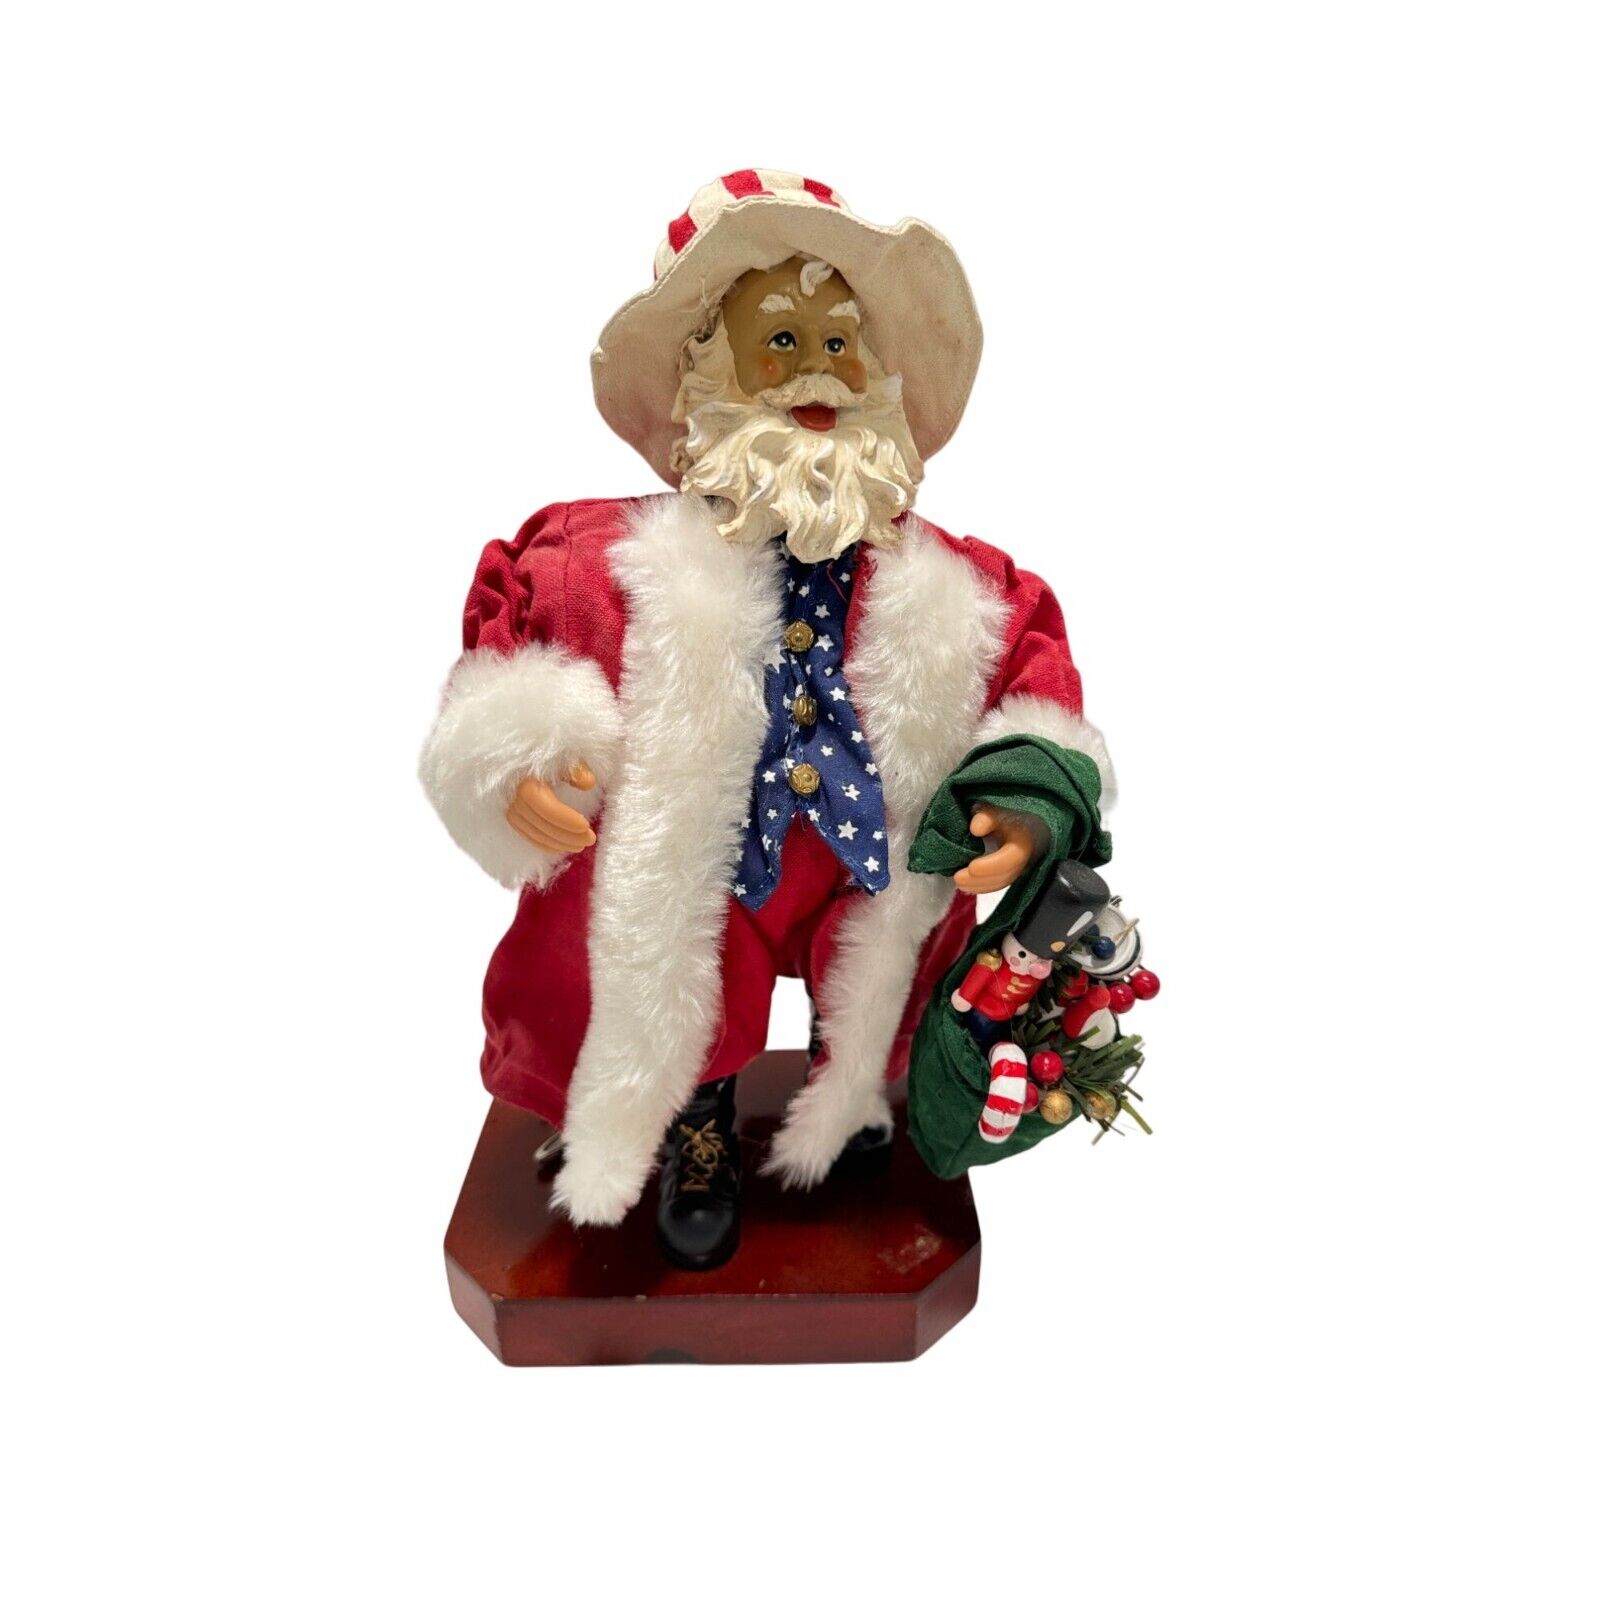 Americana Santa Claus Clothtique Schmidt Musical Christmas Holiday Figurine